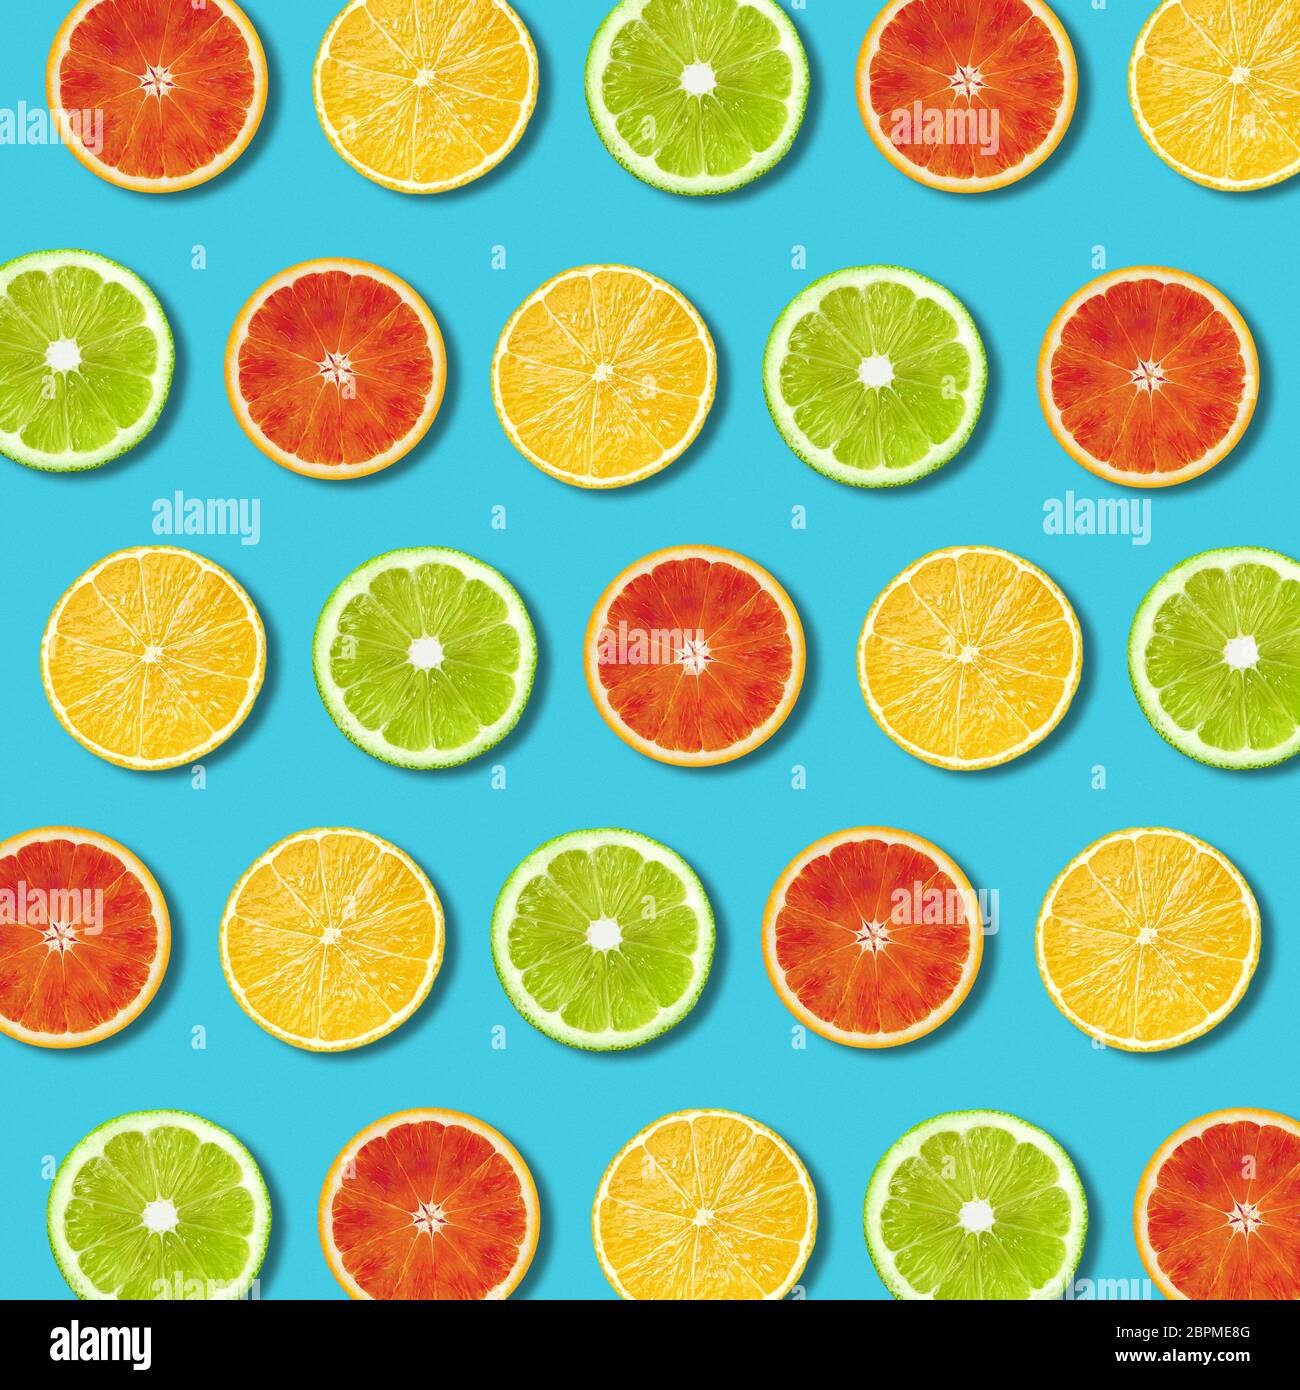 Multicolore limone vibranti, verde lime e rosso fette orande pattern su sfondo turchese. Minima laici flat top view food texture Foto Stock